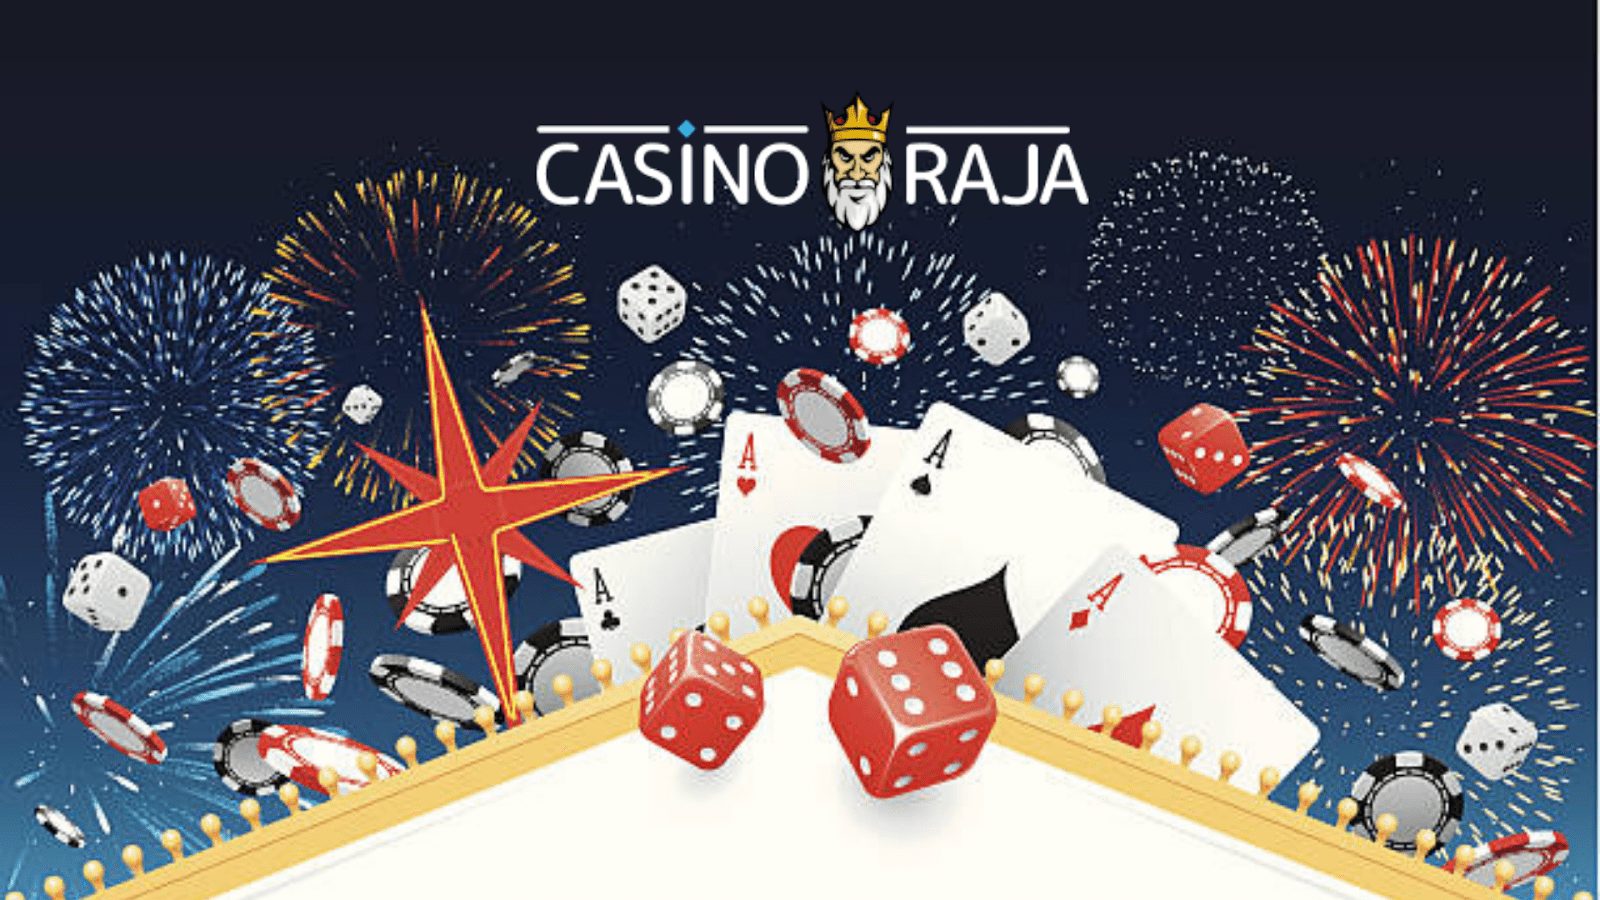 Casino raja